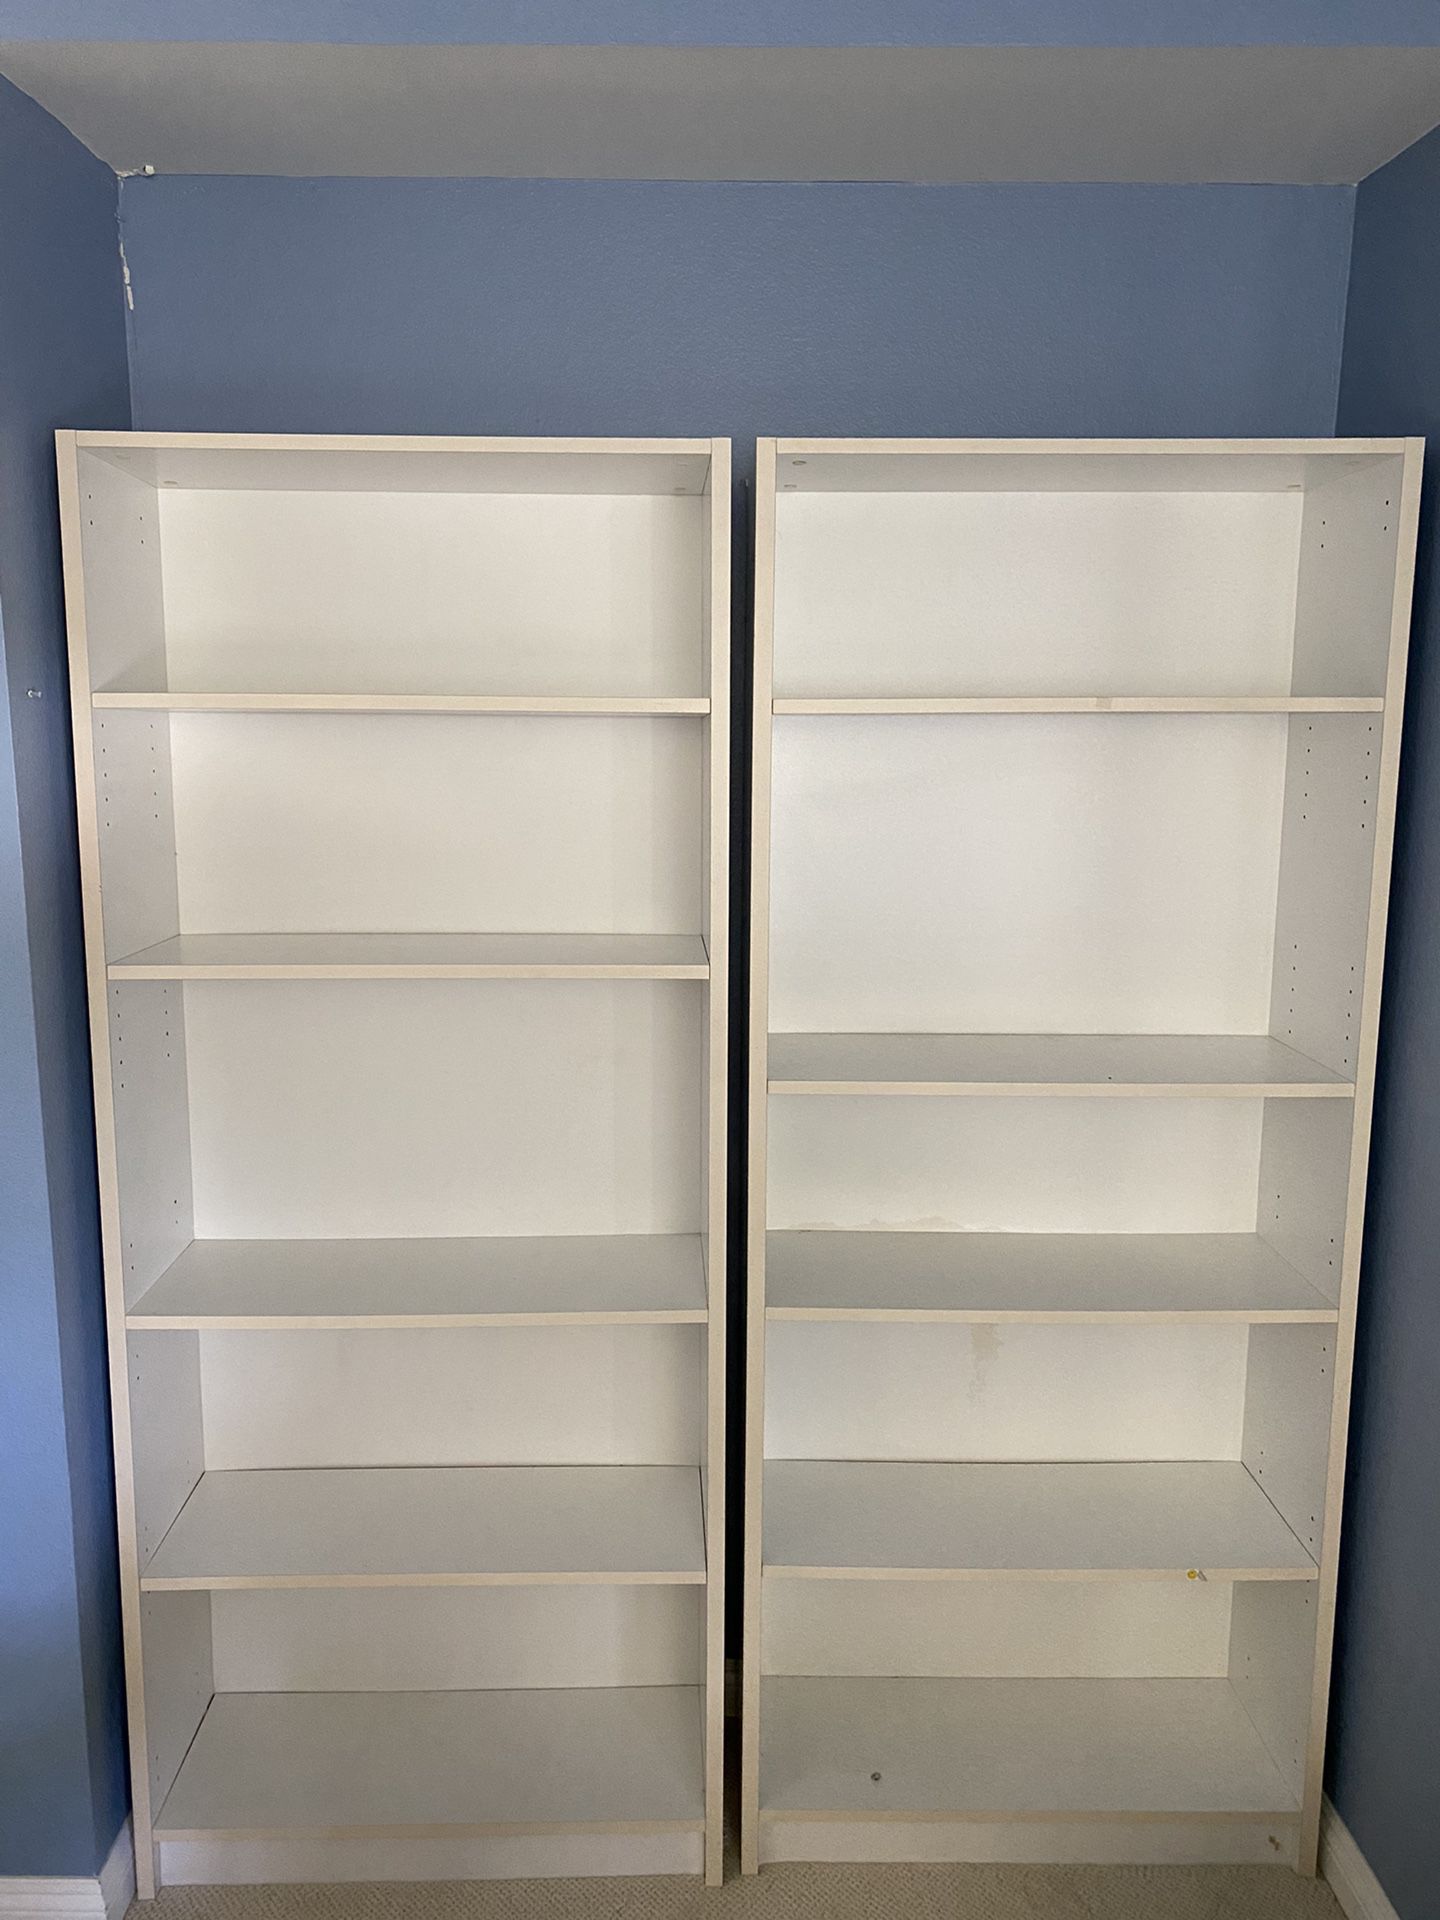 2 White bookshelves